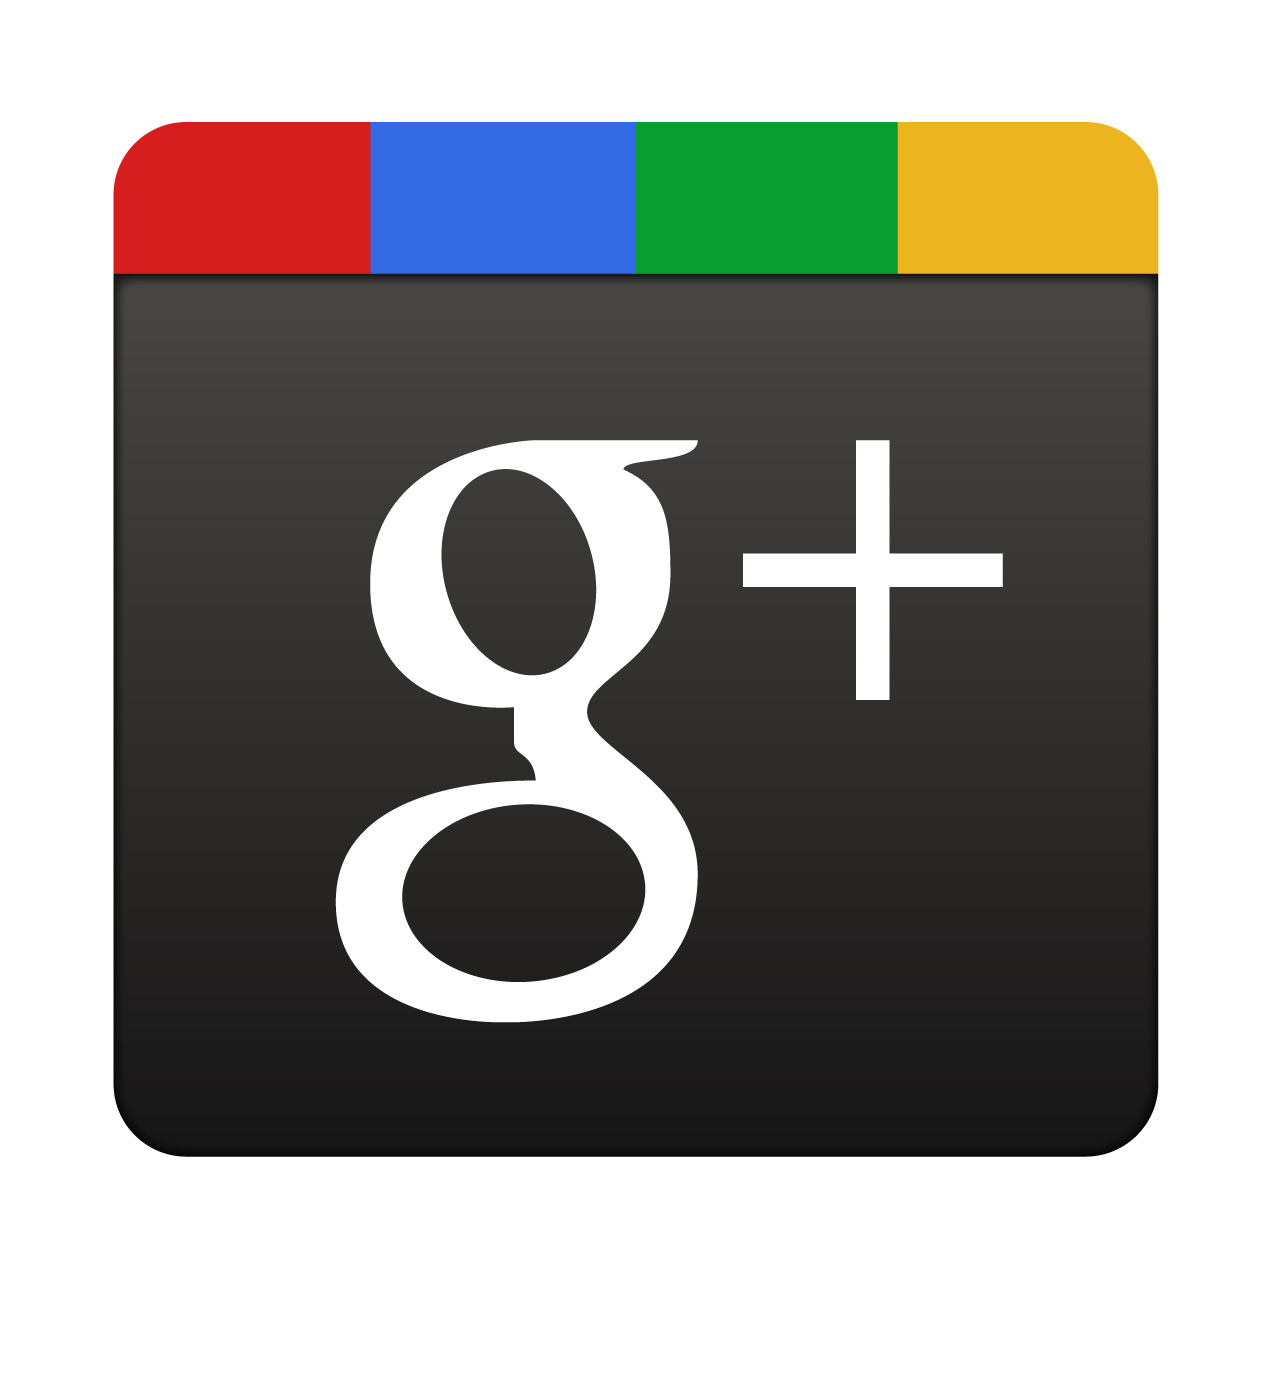 Unidad Cuitlahuac en Google+